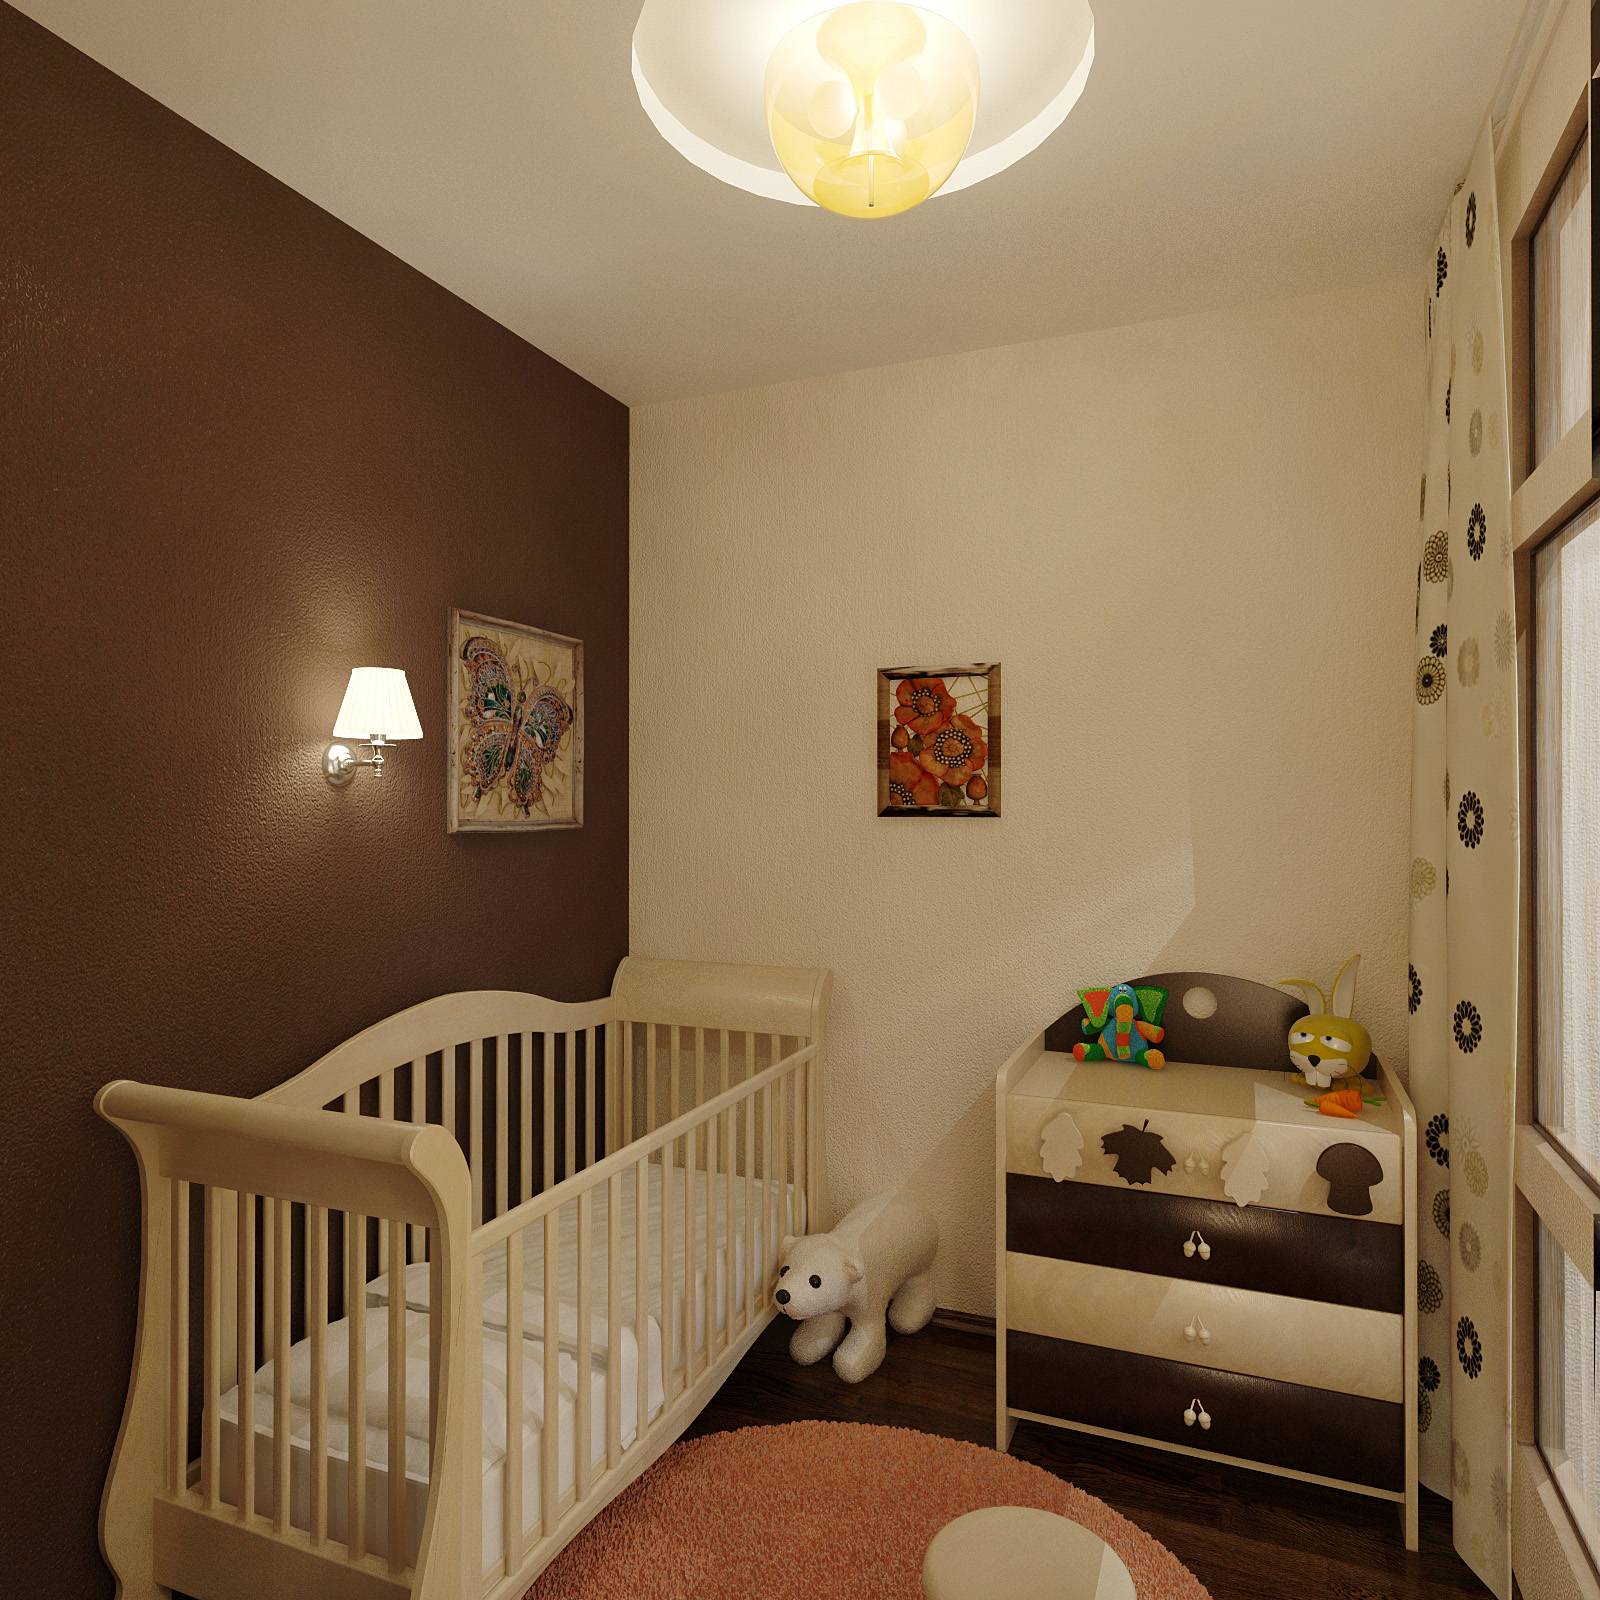 Дизайн спальни с детской кроваткой - варианты интерьеров